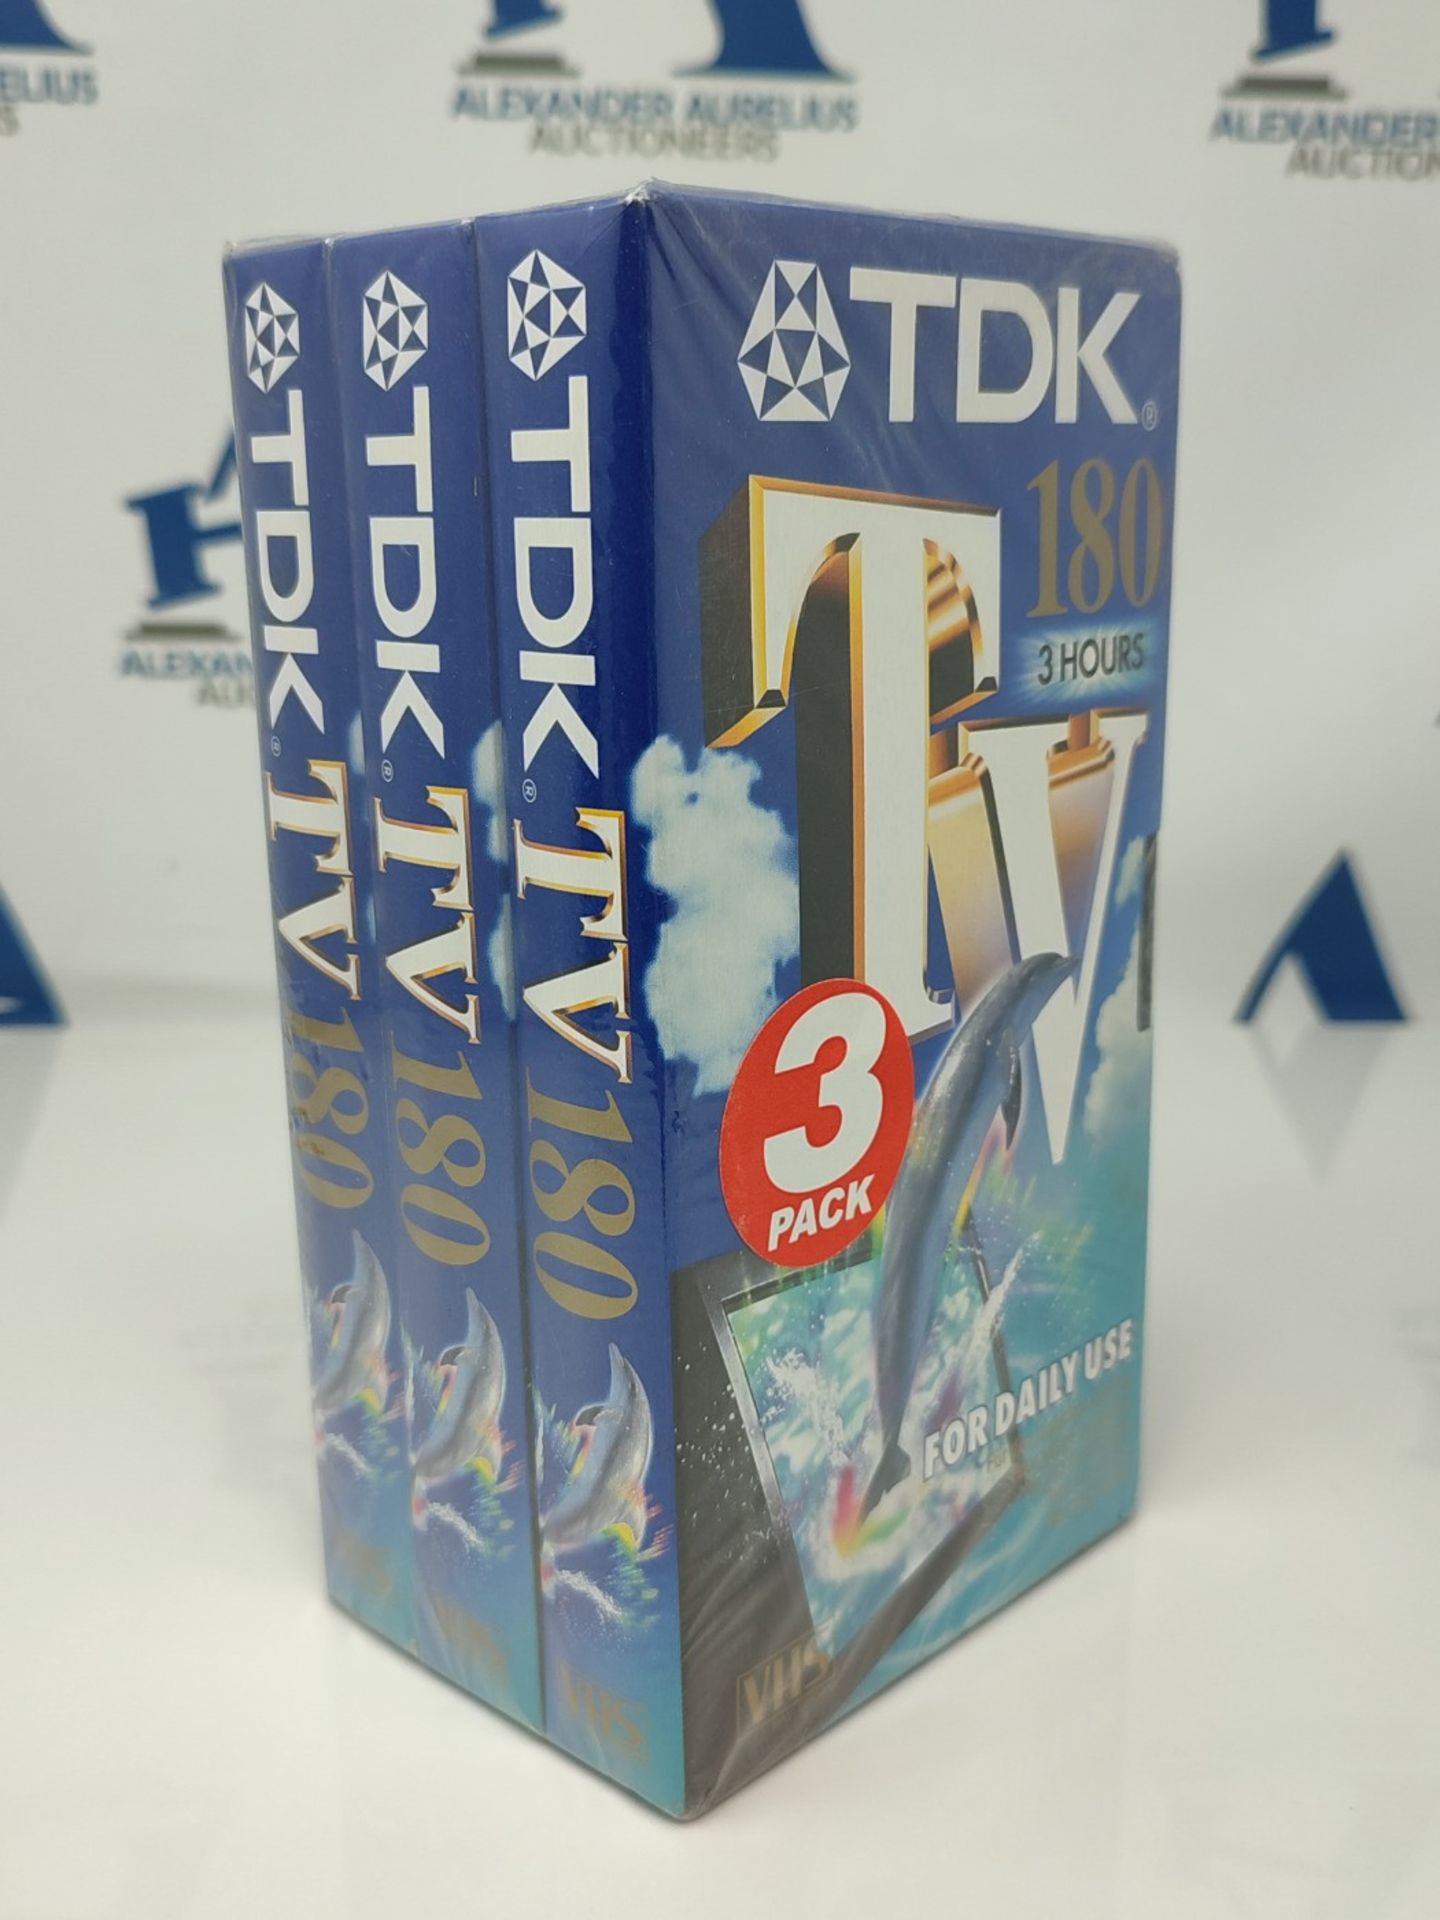 TDK E 180 TV Blank Tapes 3pcs - Image 2 of 2